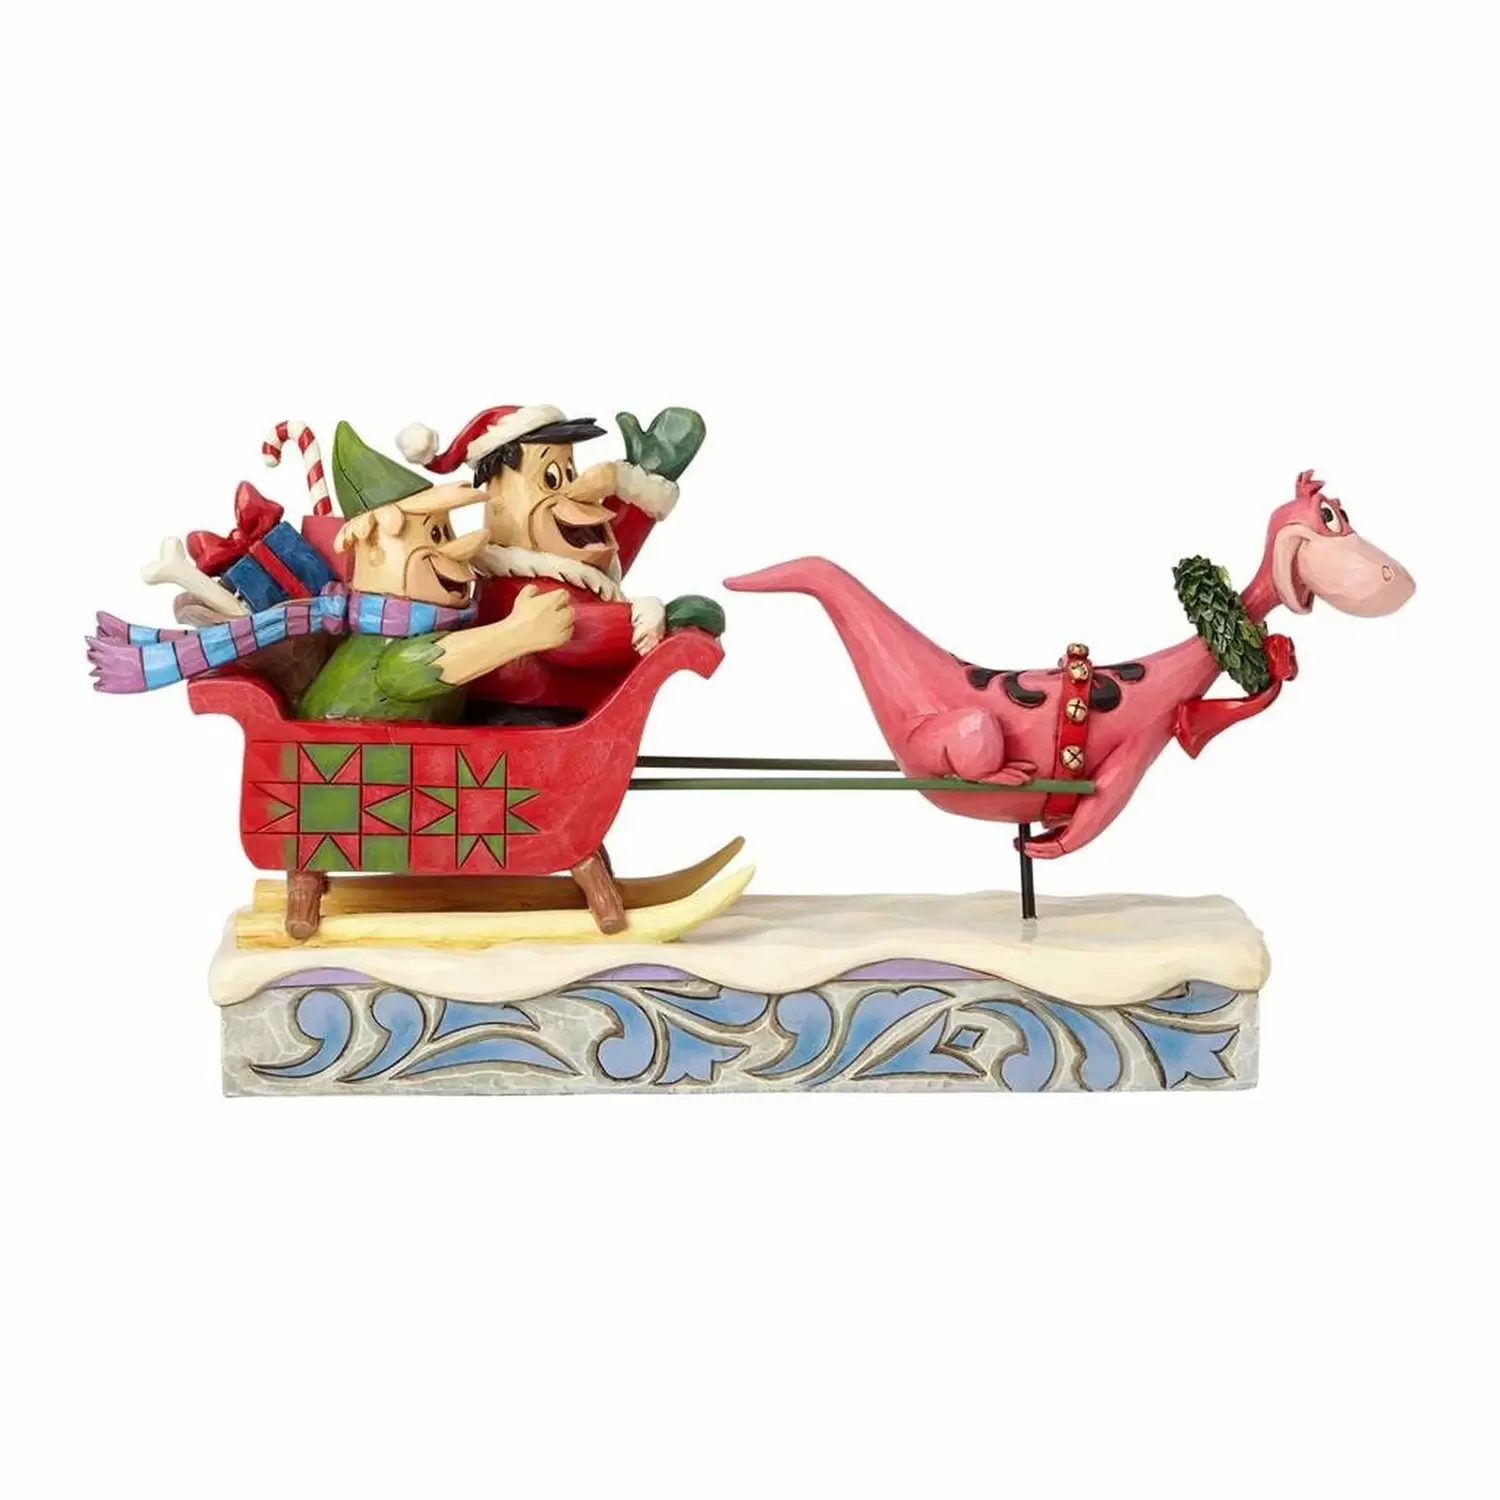 Cartoons Characters by Jim Shore - Christmas in Bedrock - Flinstones Sleigh Ride